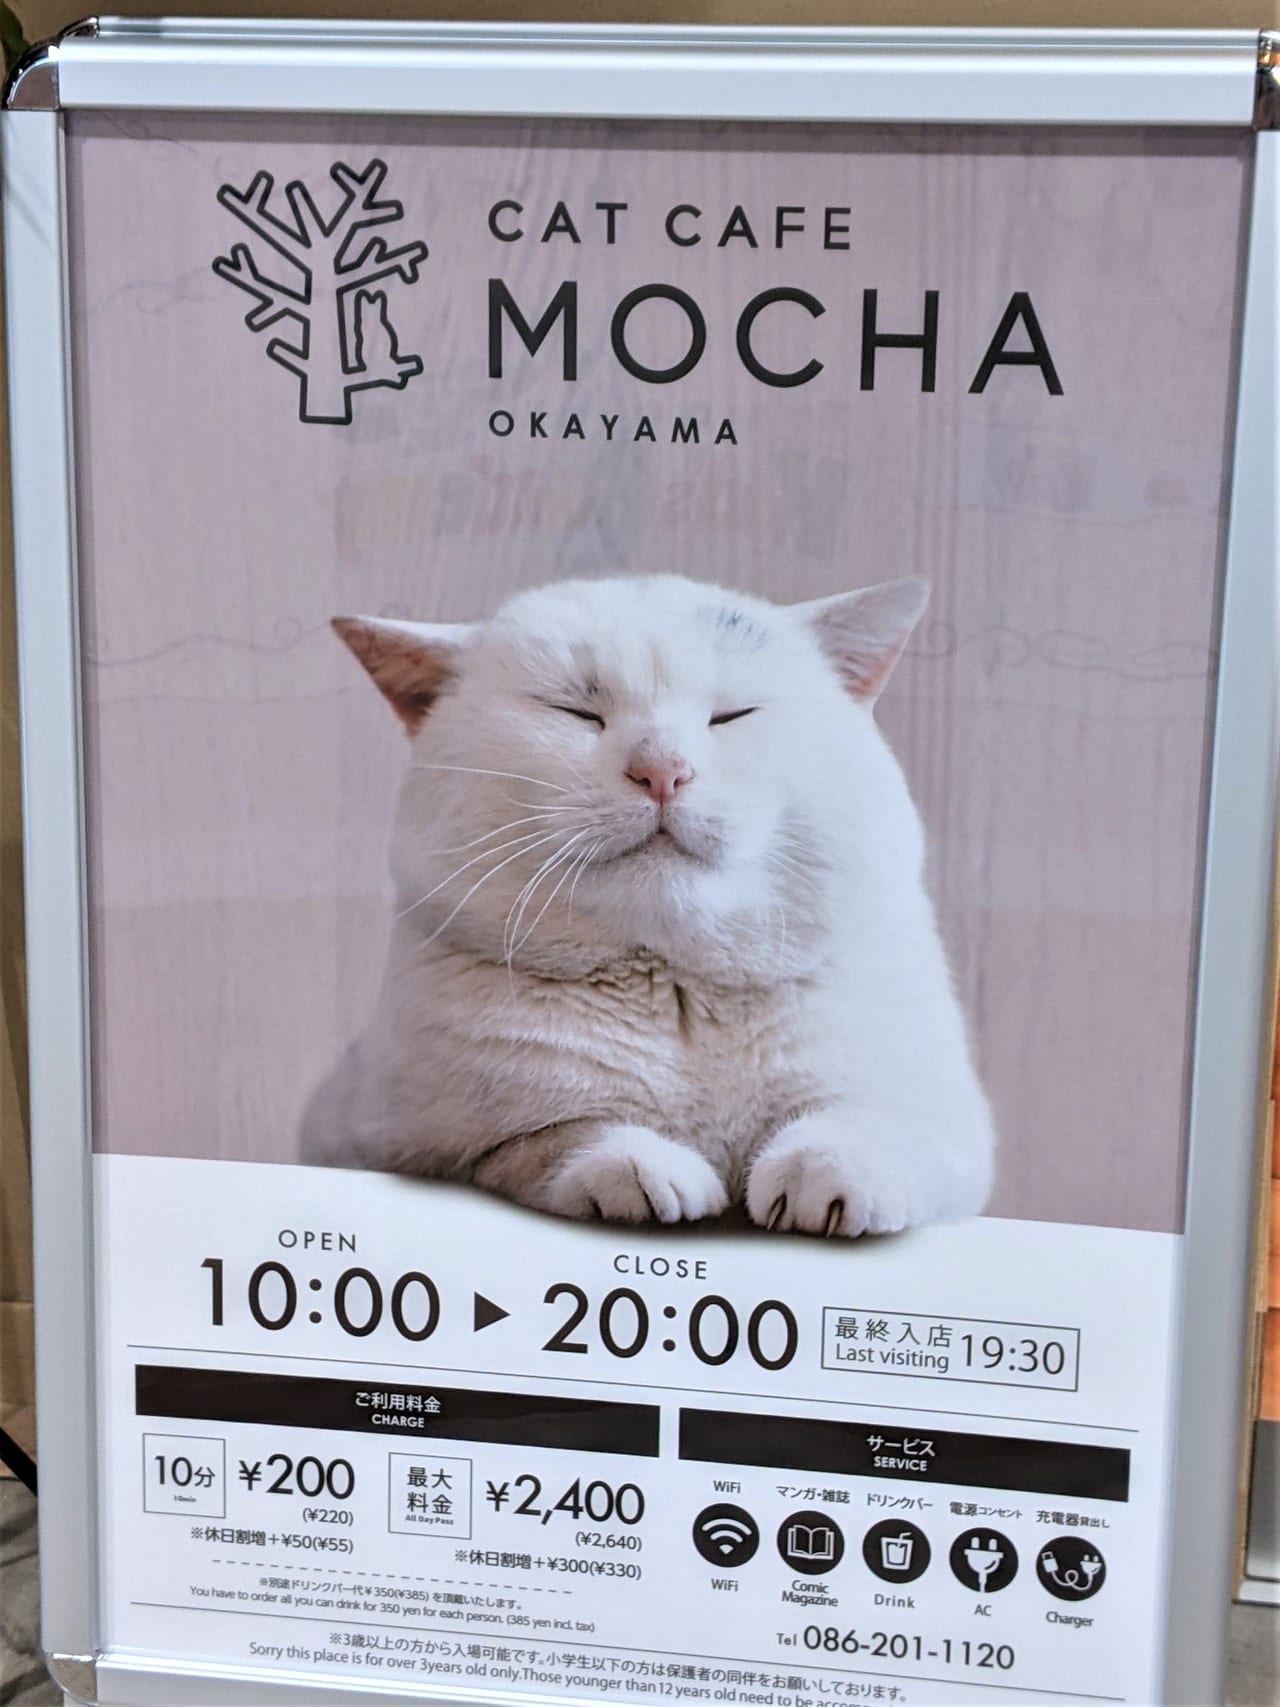 岡山市北区 岡山初出店の猫カフェmocha モカ イオンモール岡山の5階に2月17日オープンしました 号外net 岡山市